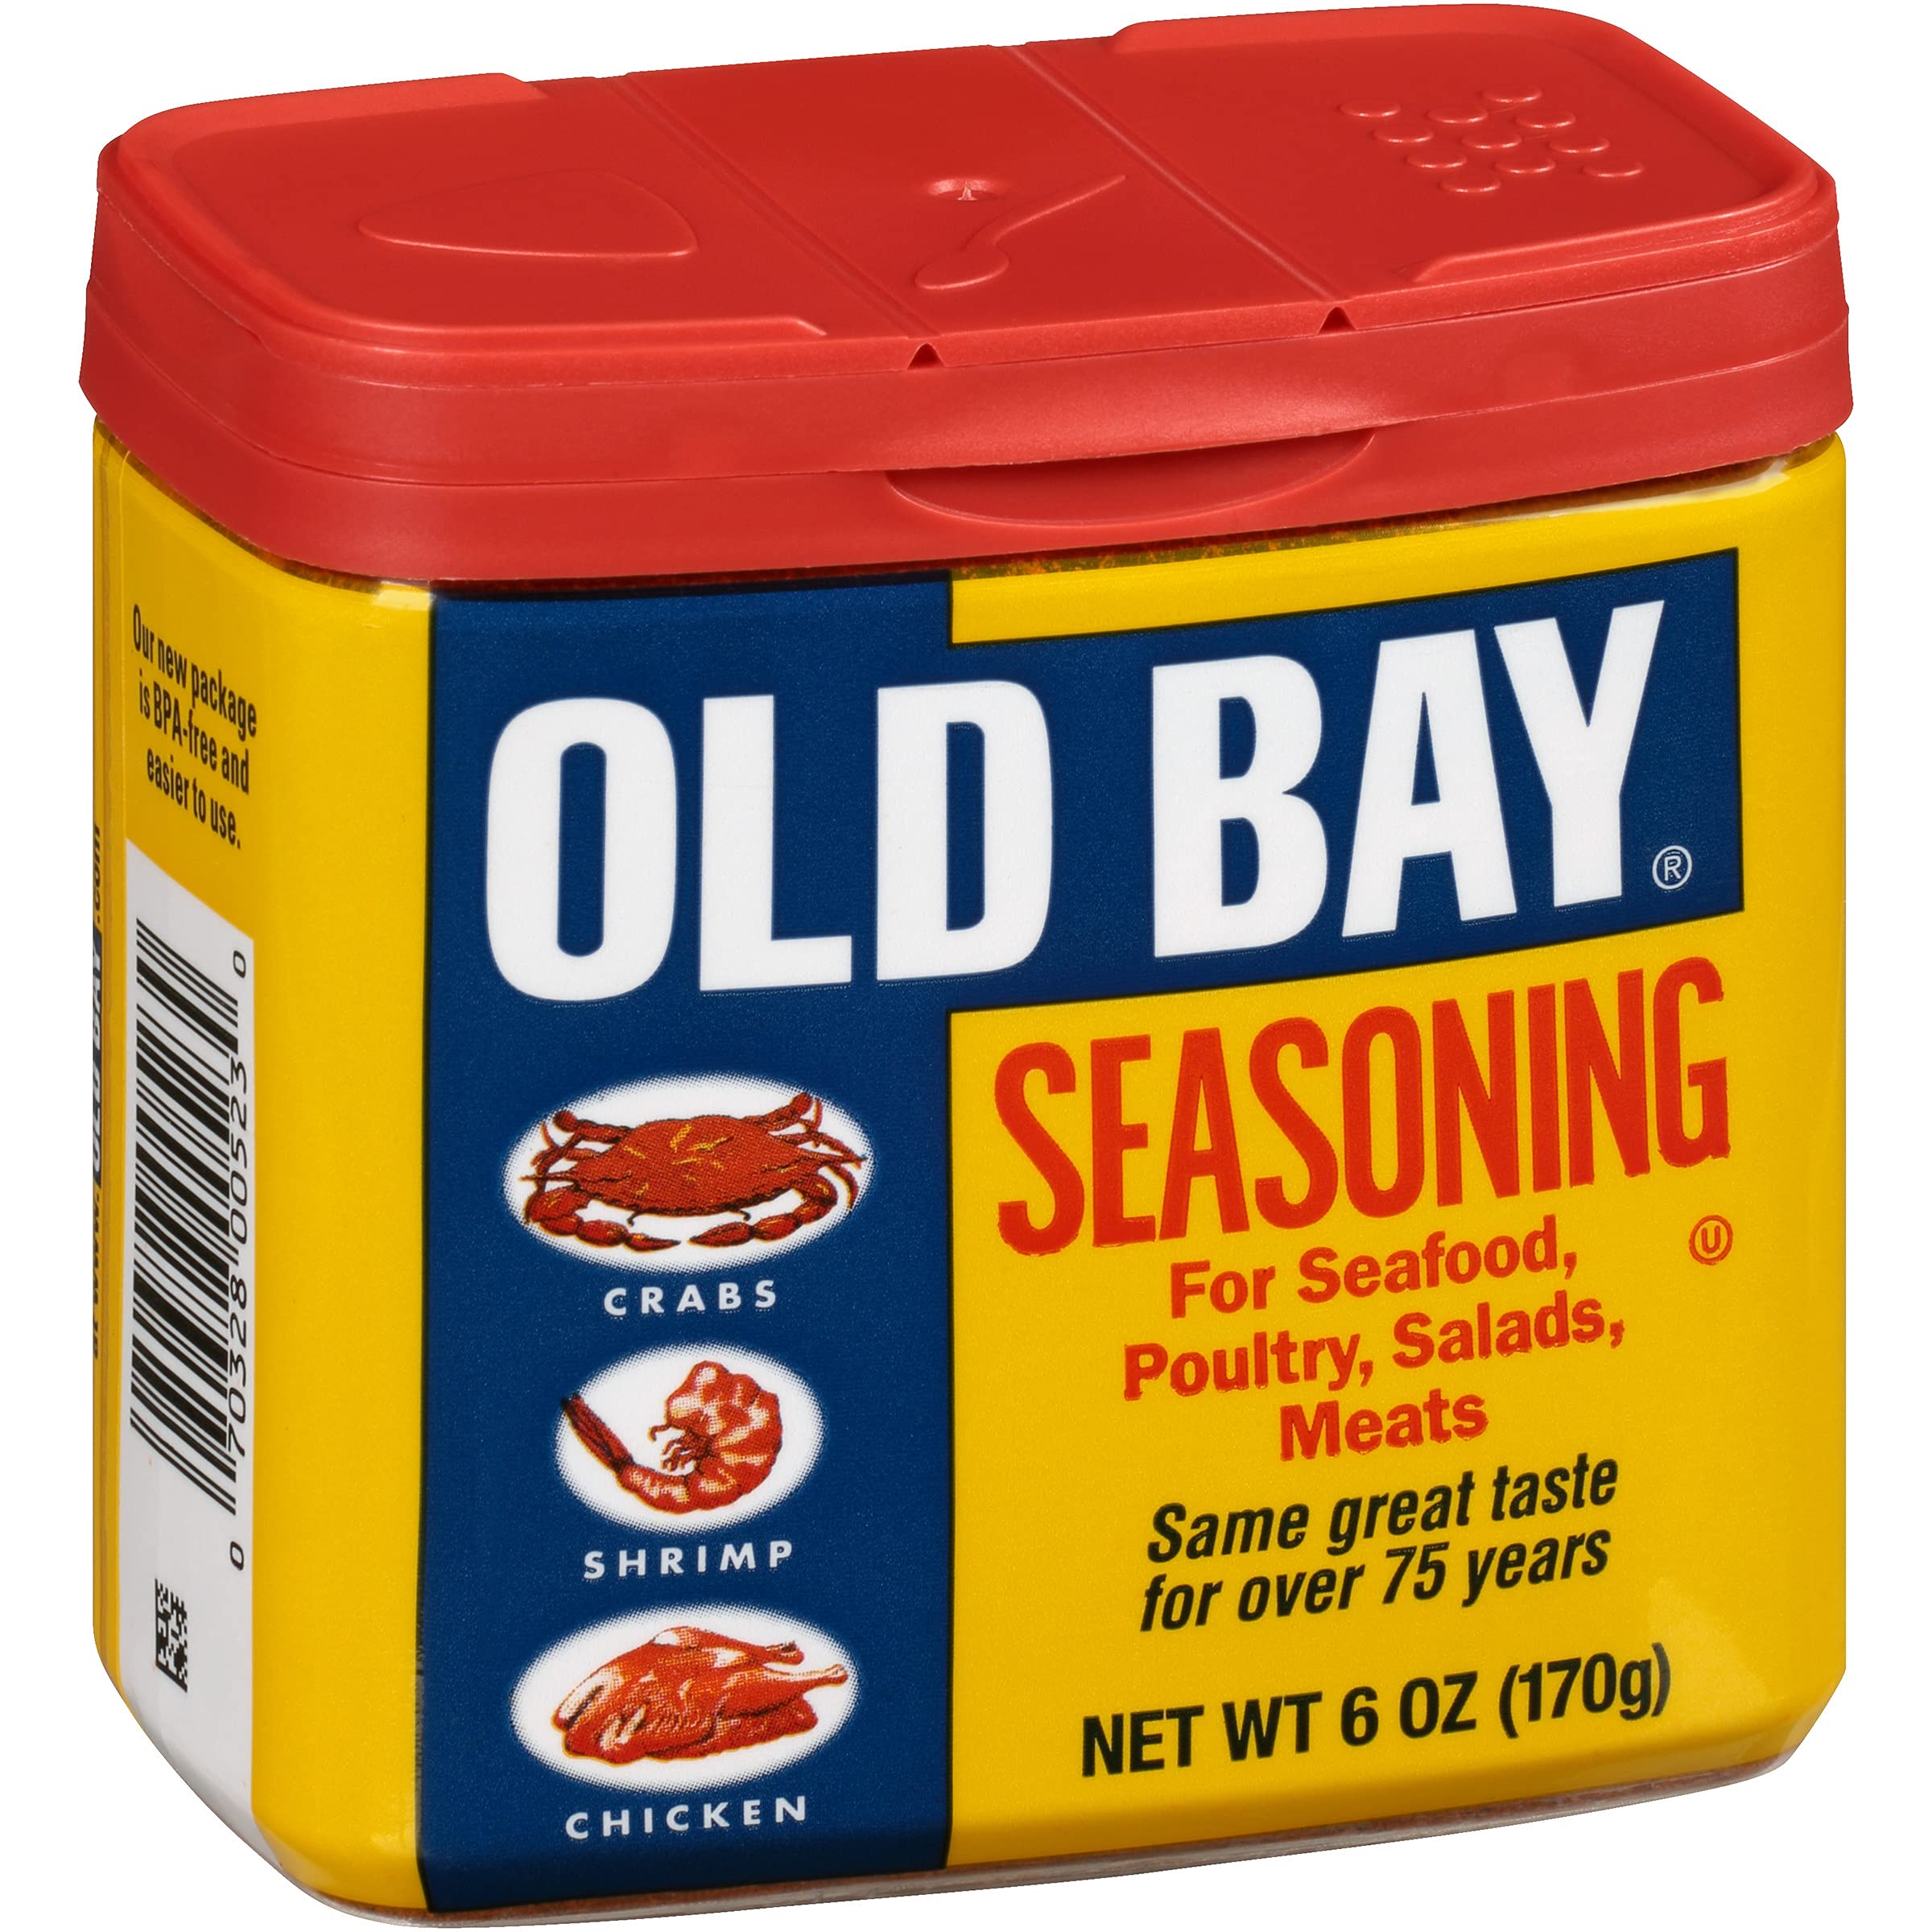 Old Bay Seasoning Original 2.62oz. BTL